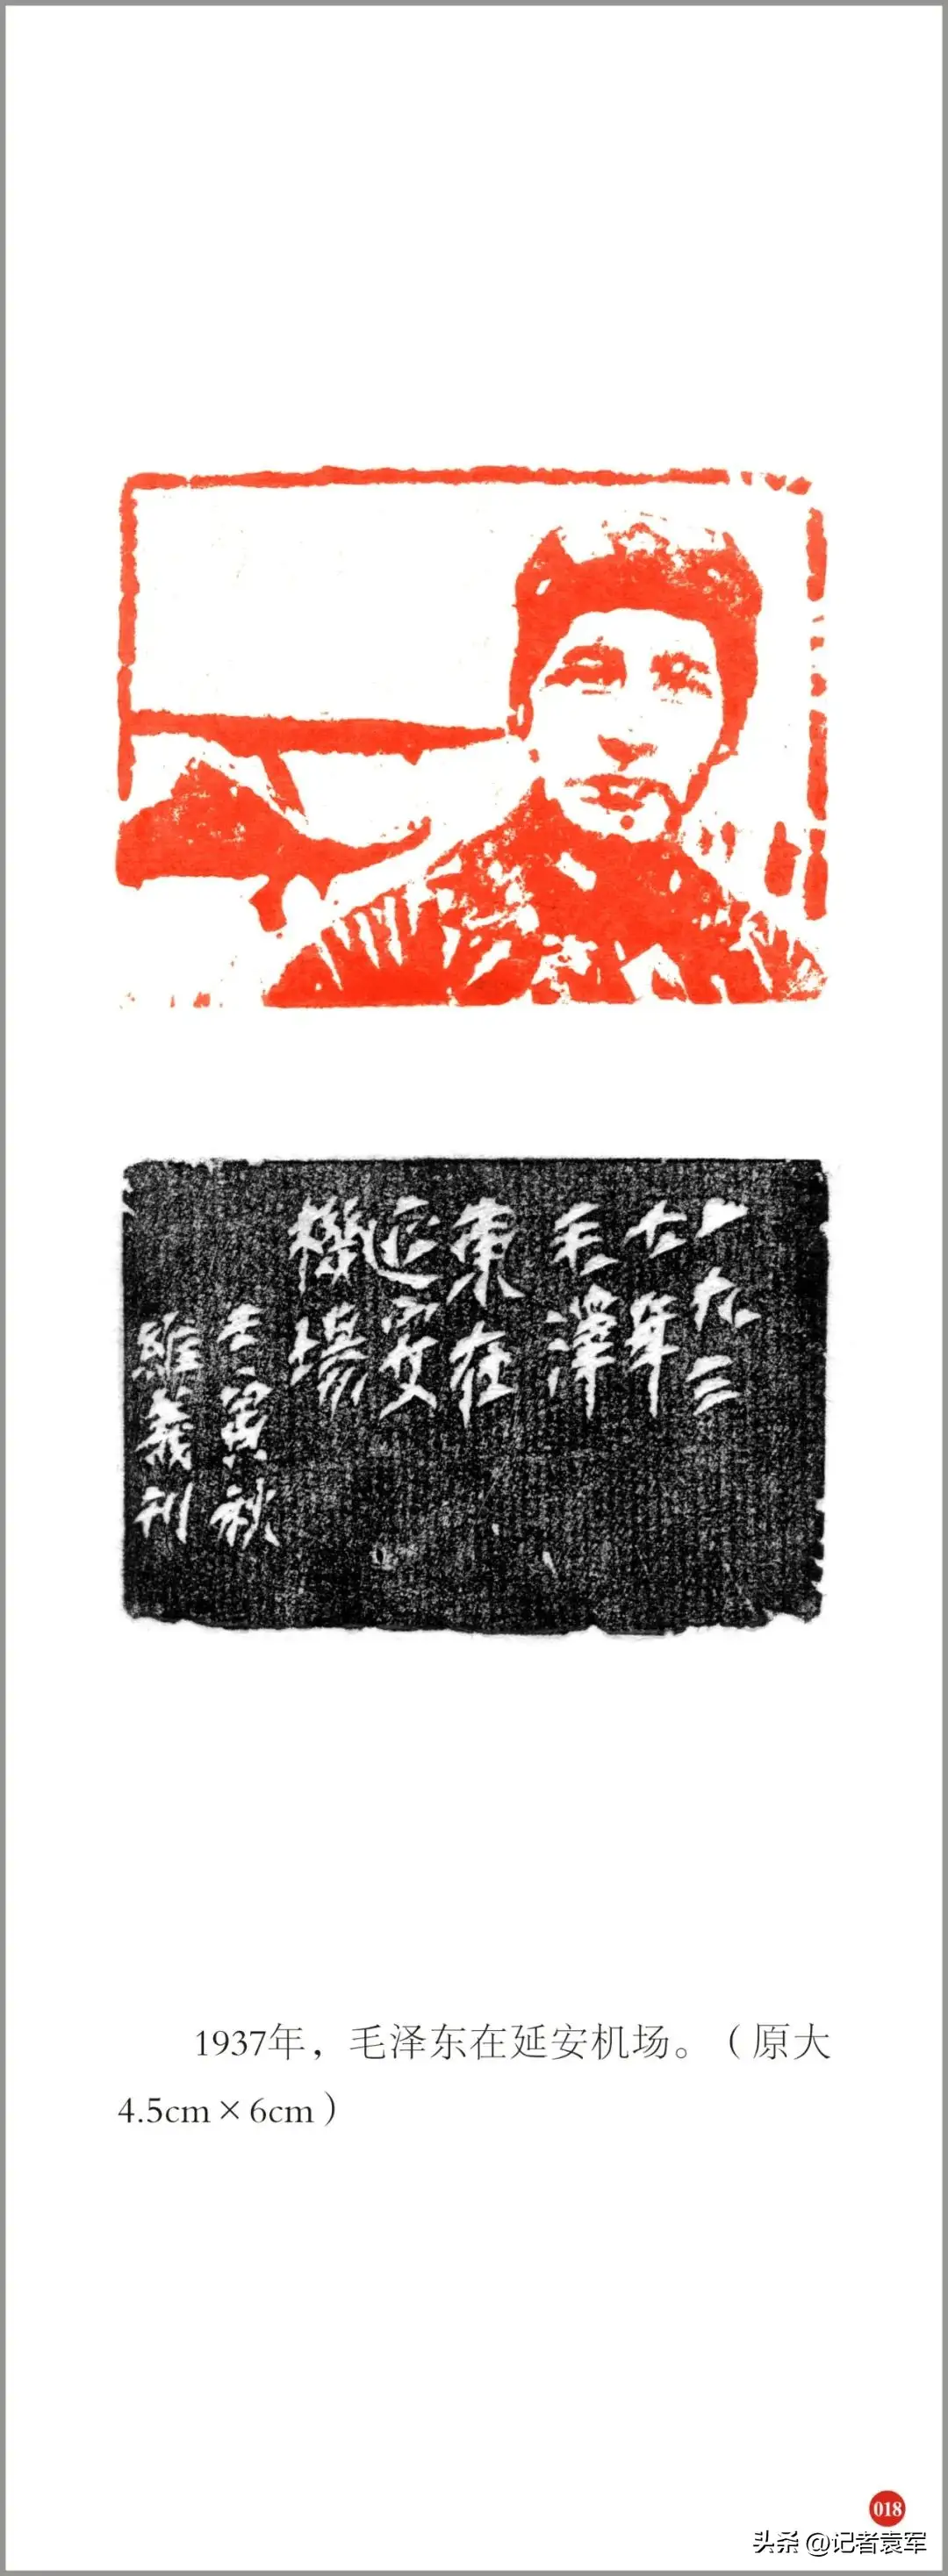 著名书法家、篆刻家文维义先生130件金石肖像印作品纪念毛泽东诞辰130周年